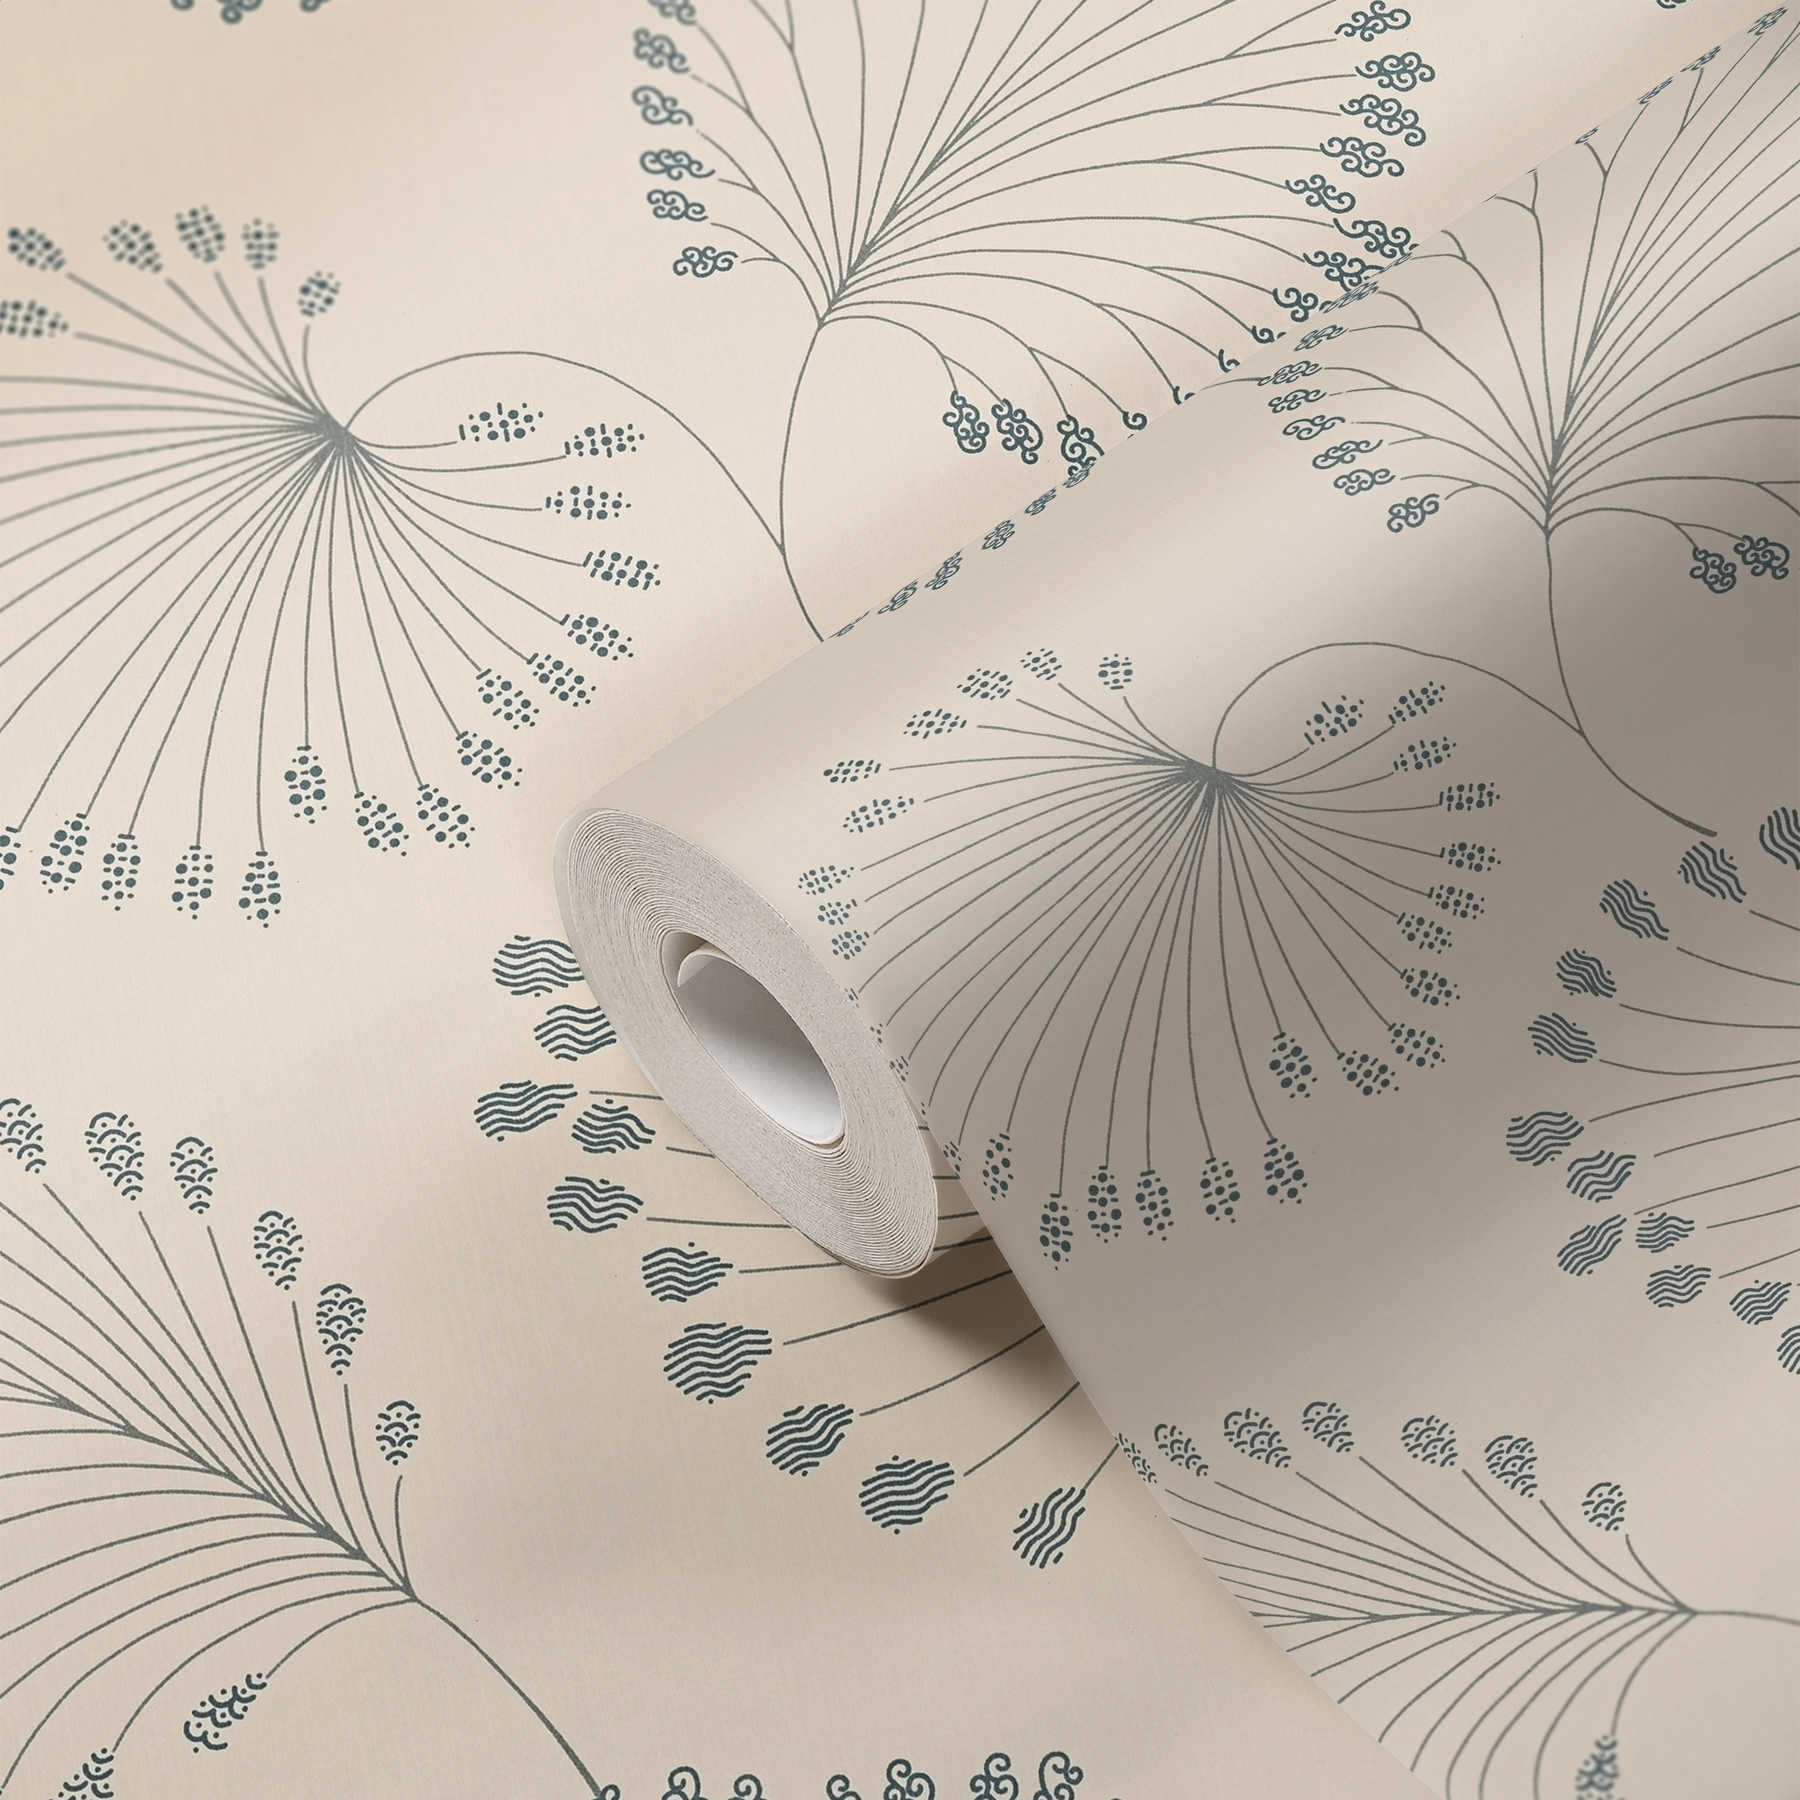             Papier peint motifs de feuilles abstraites avec accents métalliques - beige, gris
        